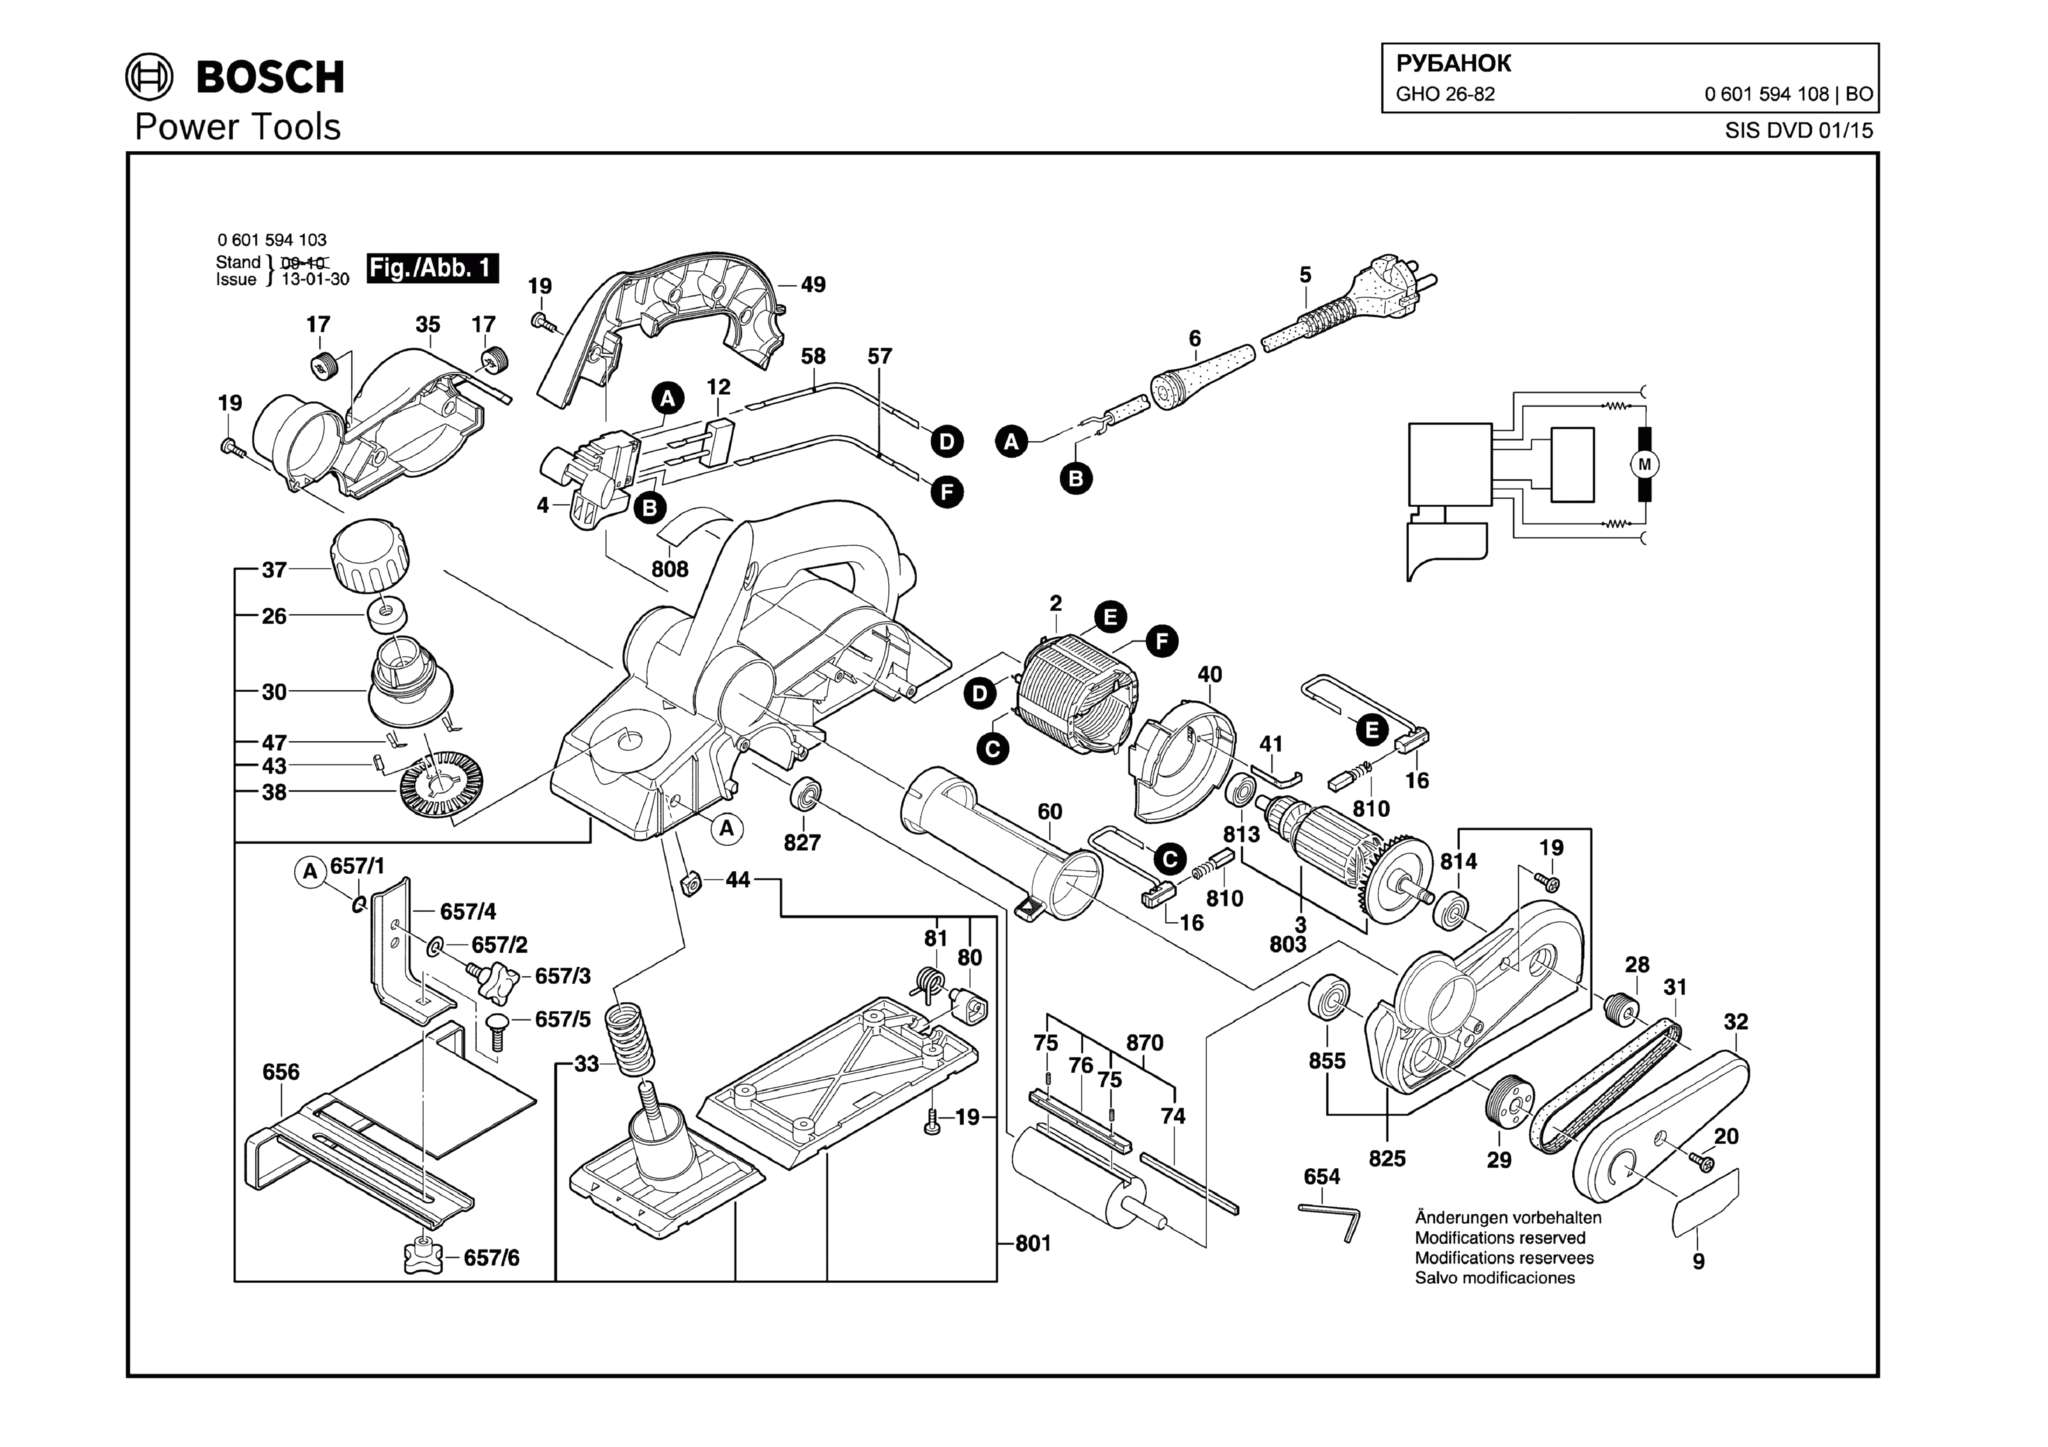 Запчасти, схема и деталировка Bosch GHO 26-82 (ТИП 0601594108)